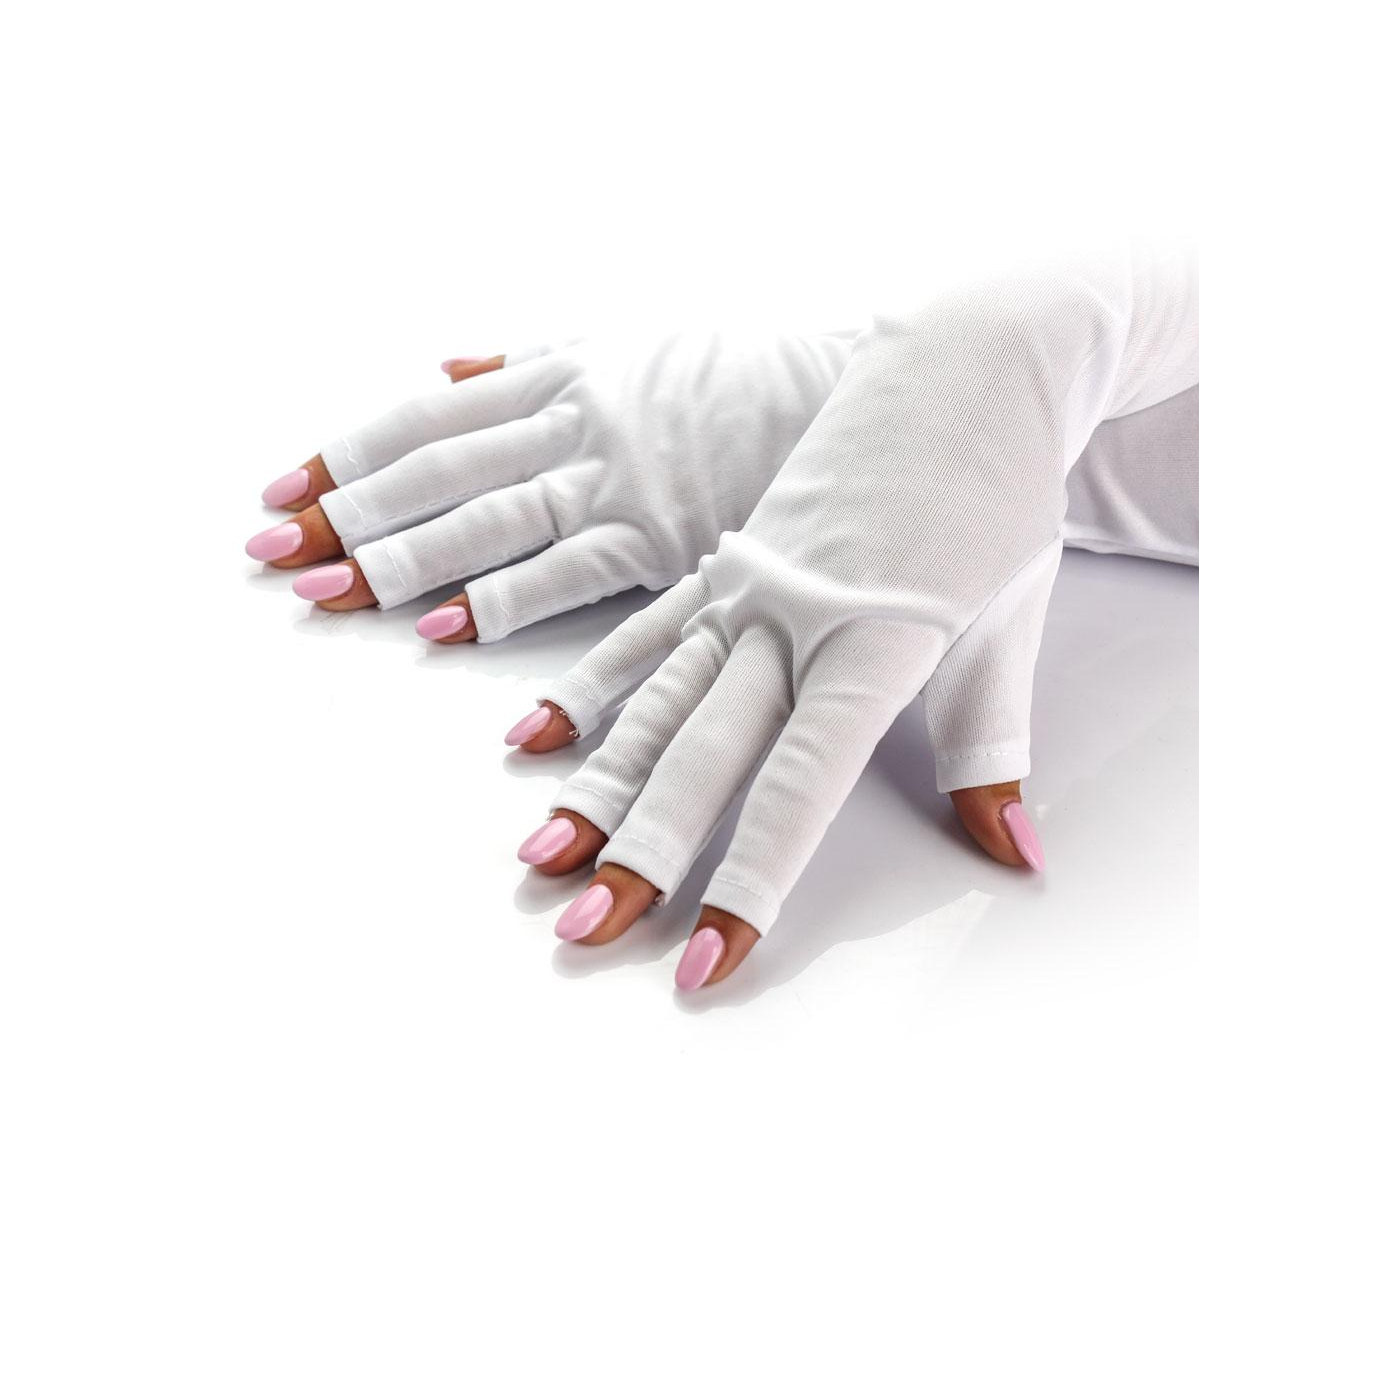 Les gants anti-uv - Mes Petits Ongles